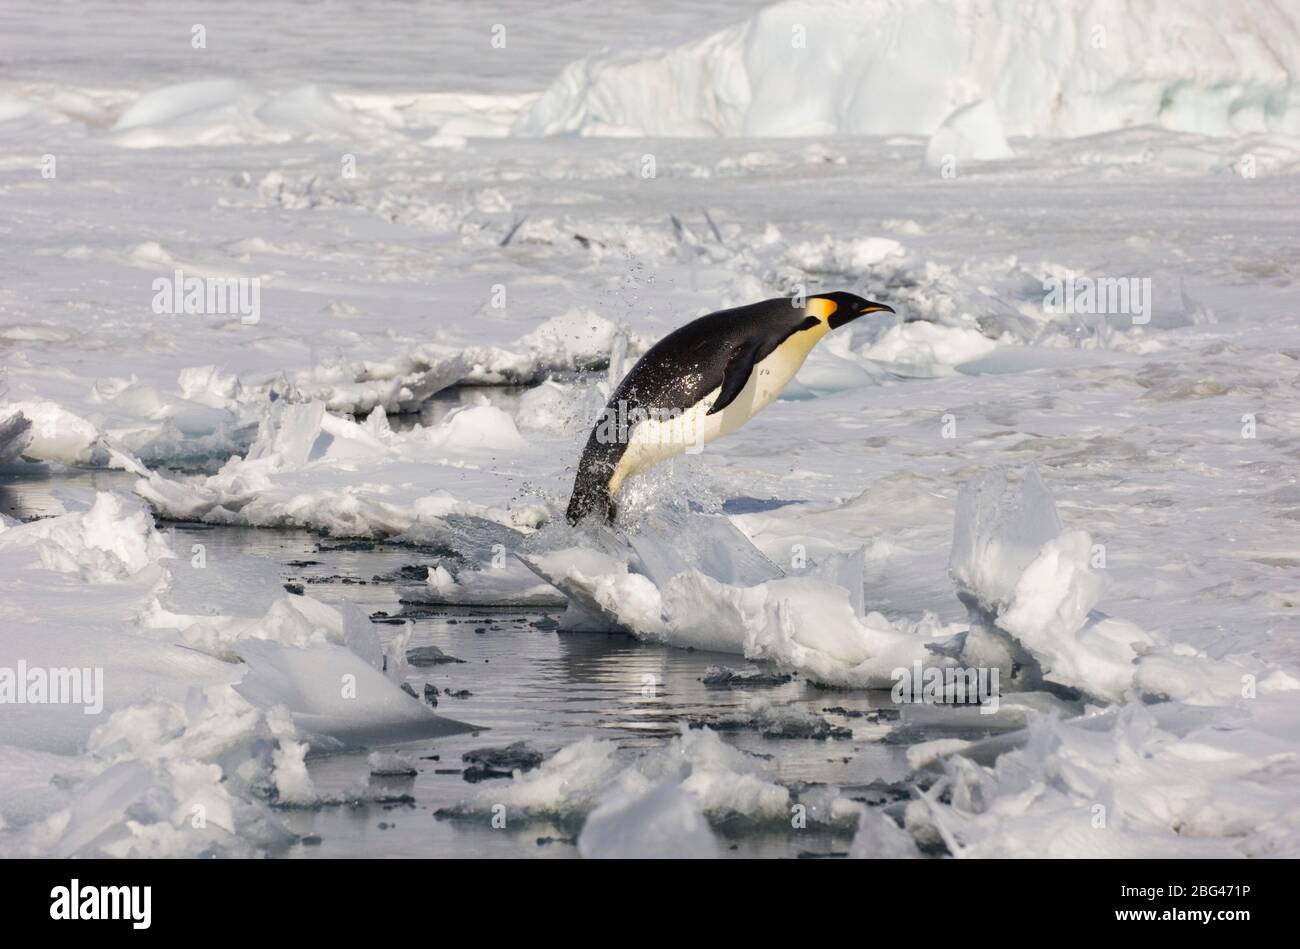 L'empereur Penguin Aptenodytes forsteri s'évertuant hors du plomb dans la glace de mer Snow Hill Island Weddell Sea Antarctique Novembre Banque D'Images